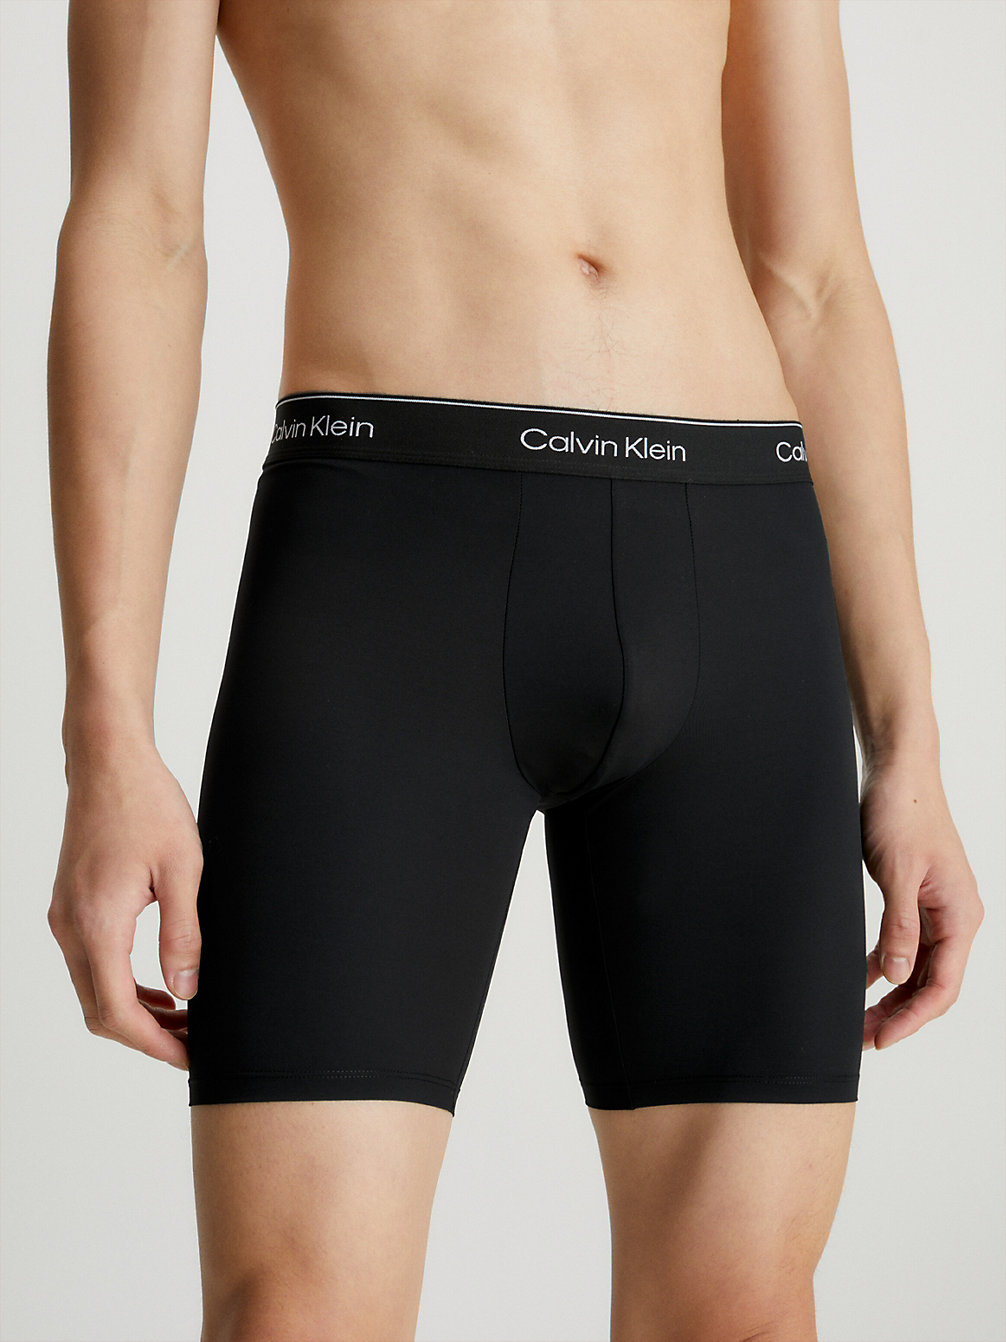 BLACK Radfahrer-Shorts - Modern Performance undefined Herren Calvin Klein